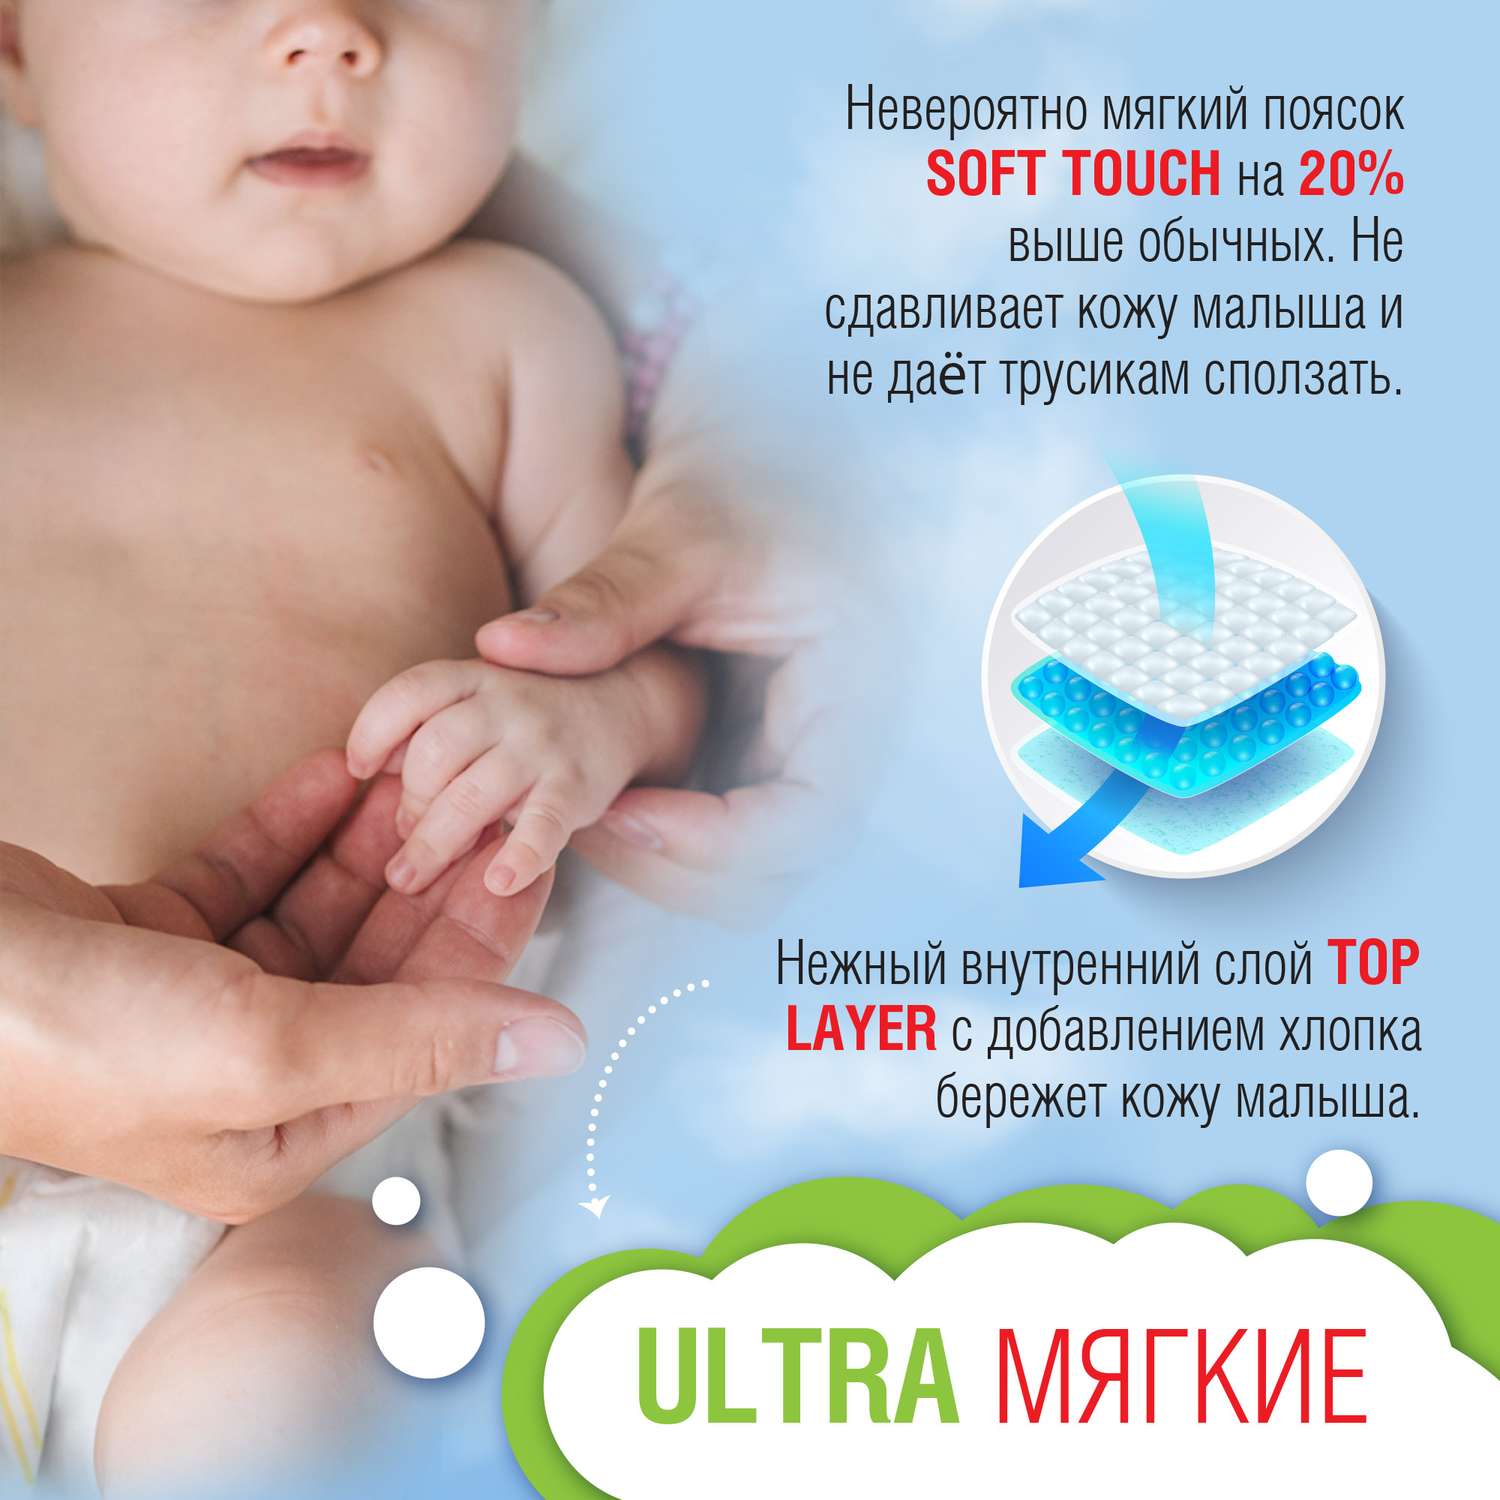 Подгузники-трусики Ekitto 6 размер XXL для новорожденных детей ультратонкие от 15-20 кг 64 шт - фото 5